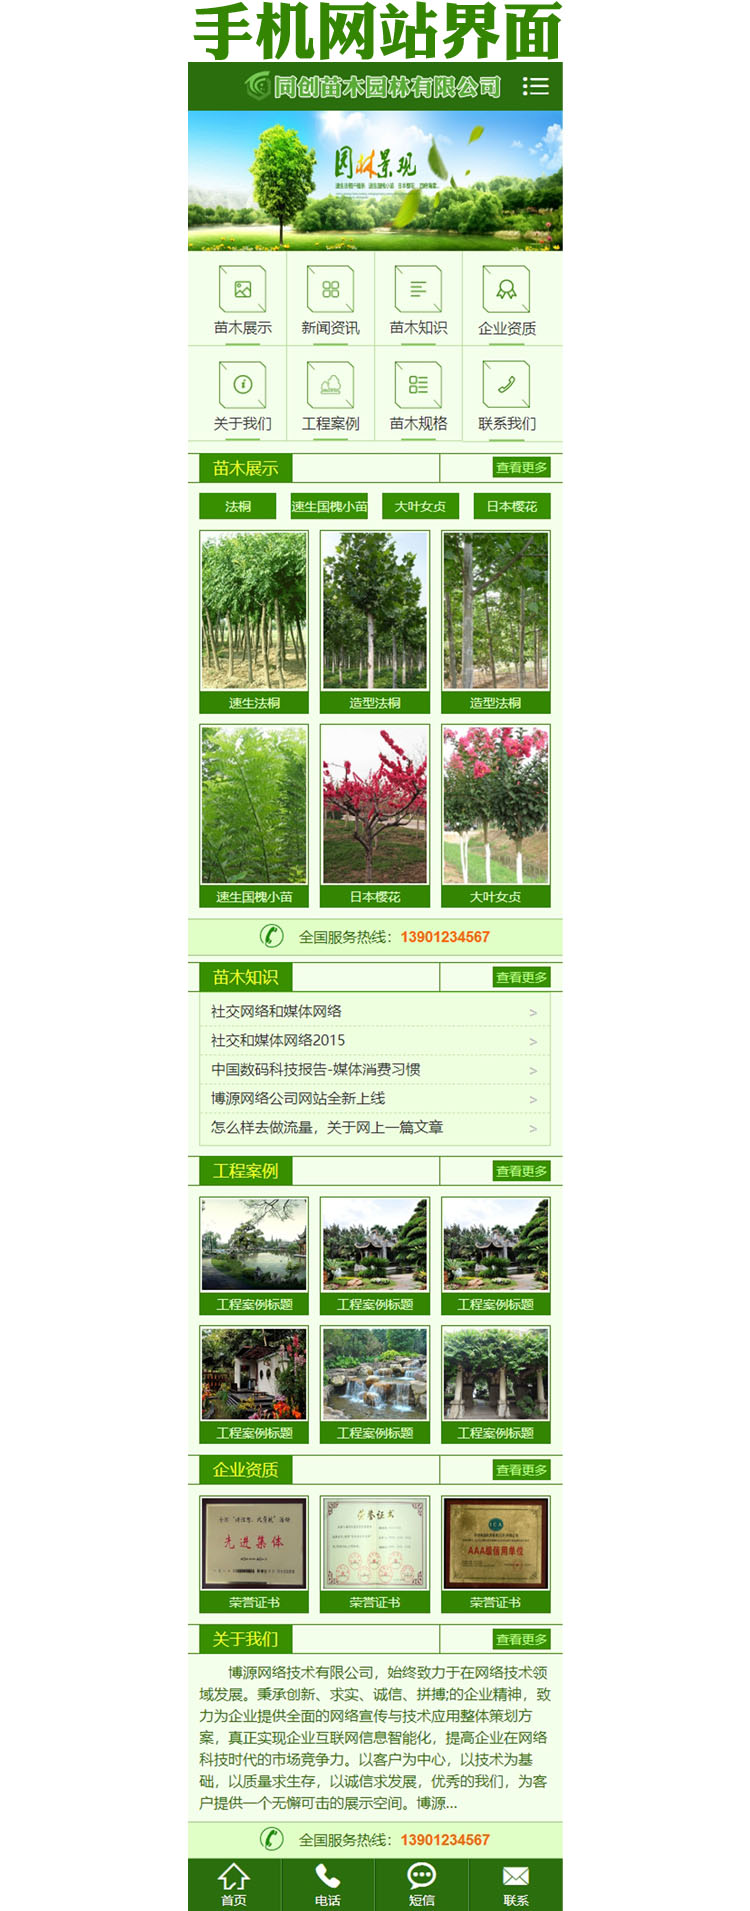 苗木种植网站源码程序-XX019-3